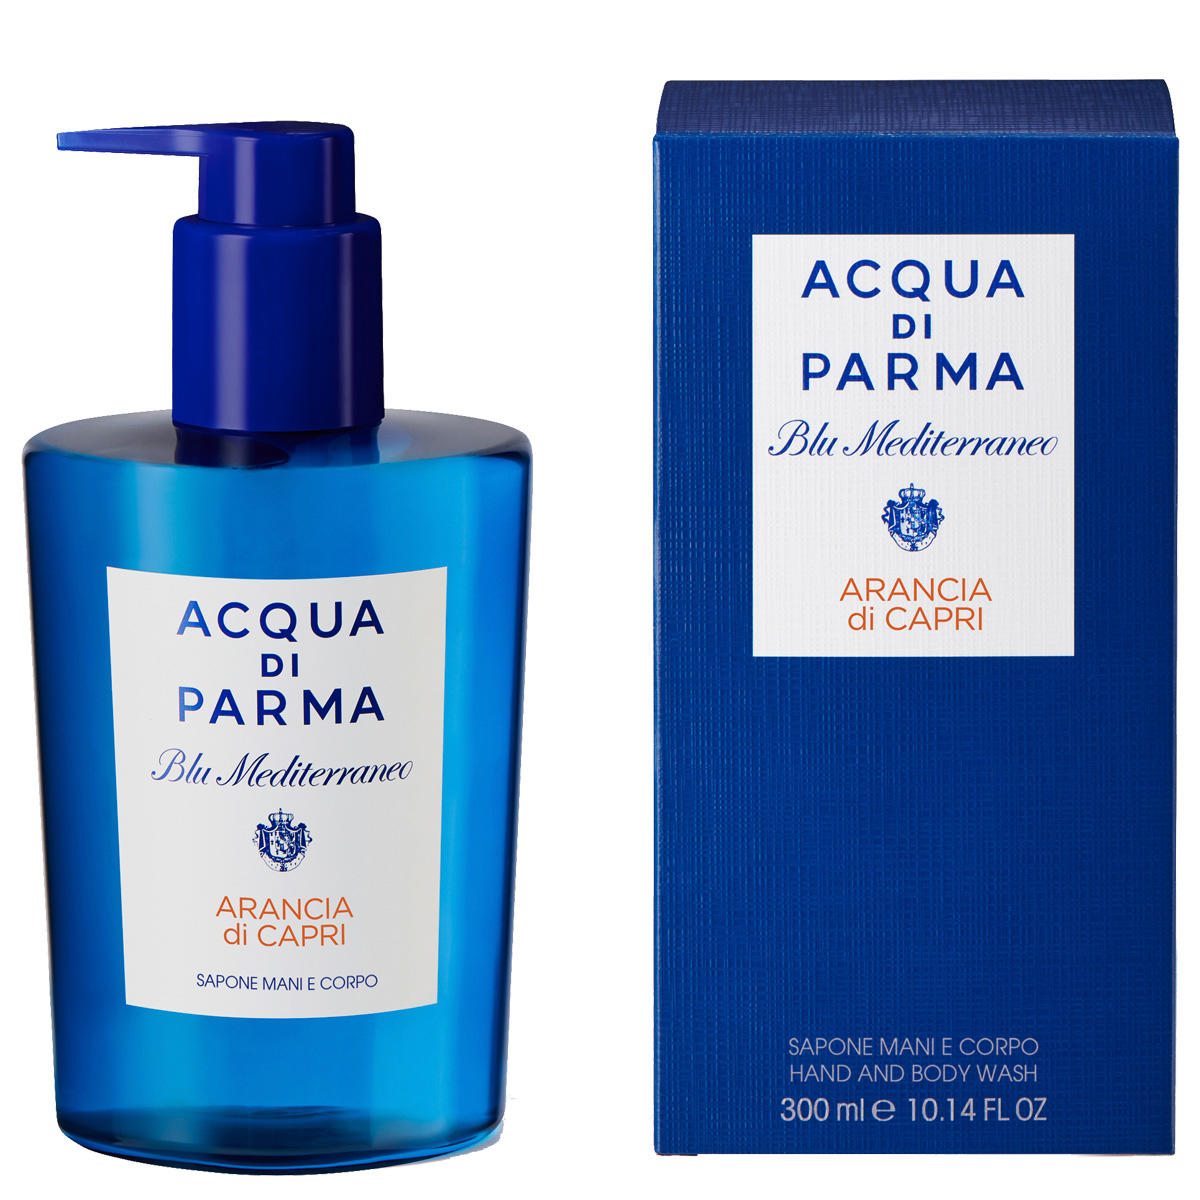 Acqua di Parma Blu Mediterraneo Arancia di Capri Hand and Body Wash 300 ml - 2